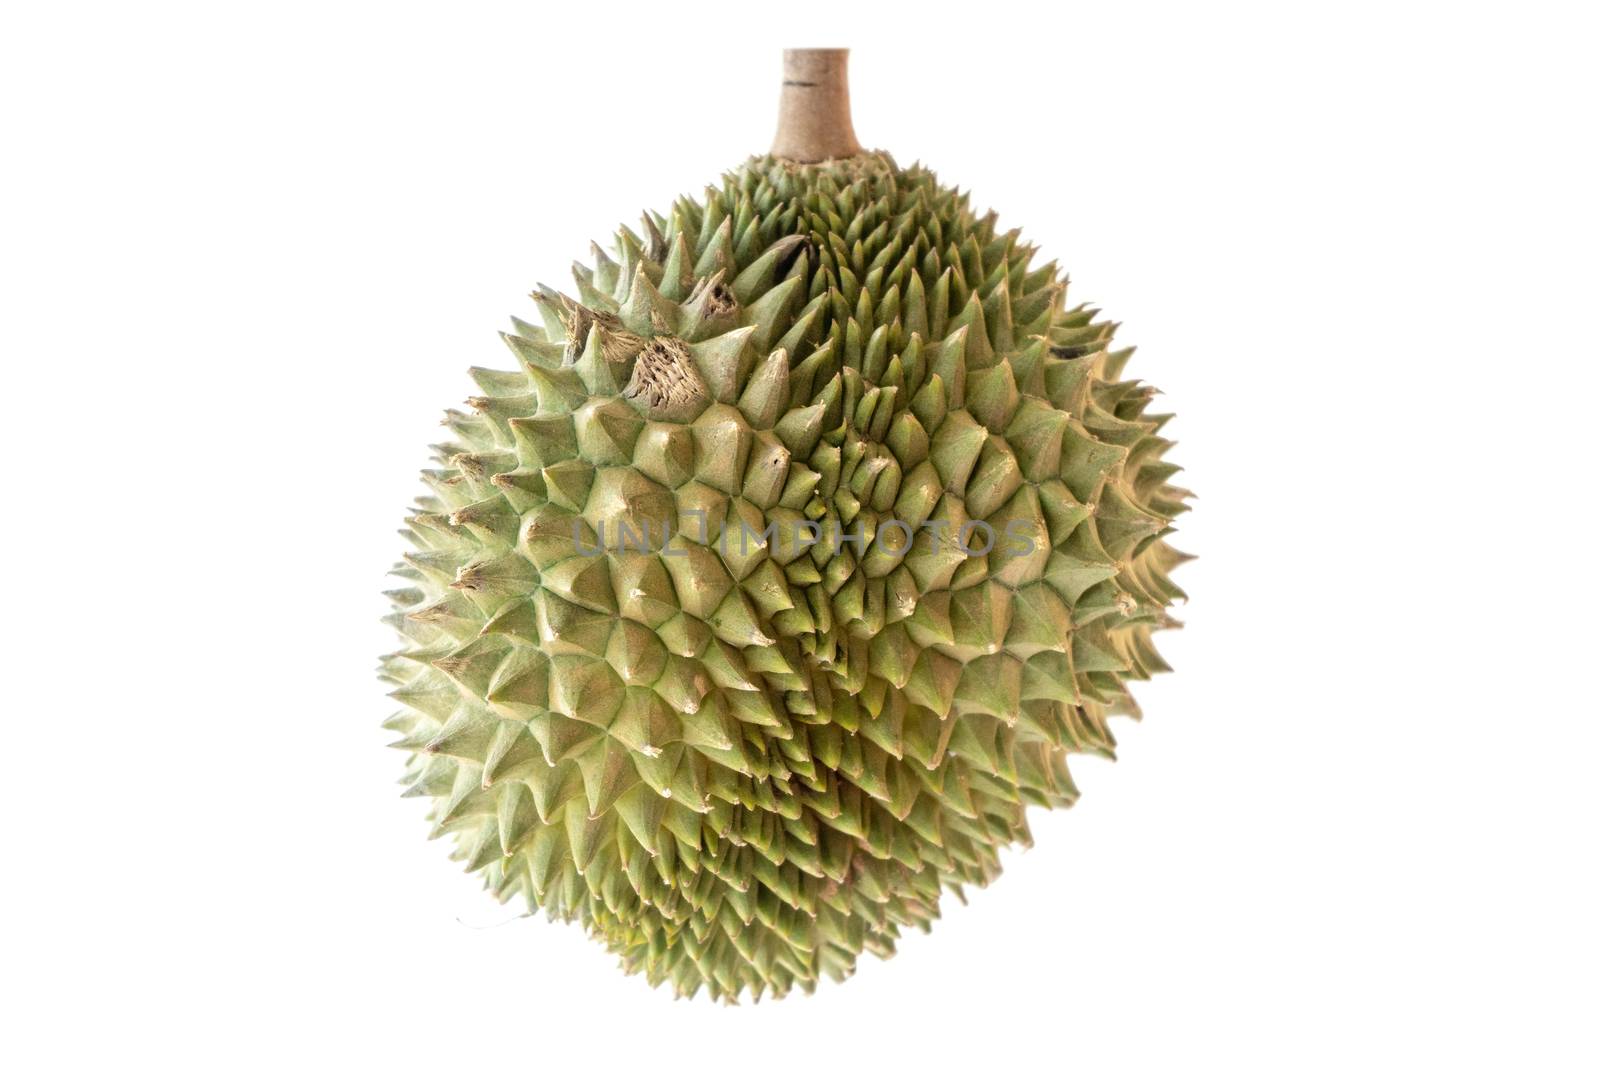 Malaysia famous fruits durian Musang King by szefei